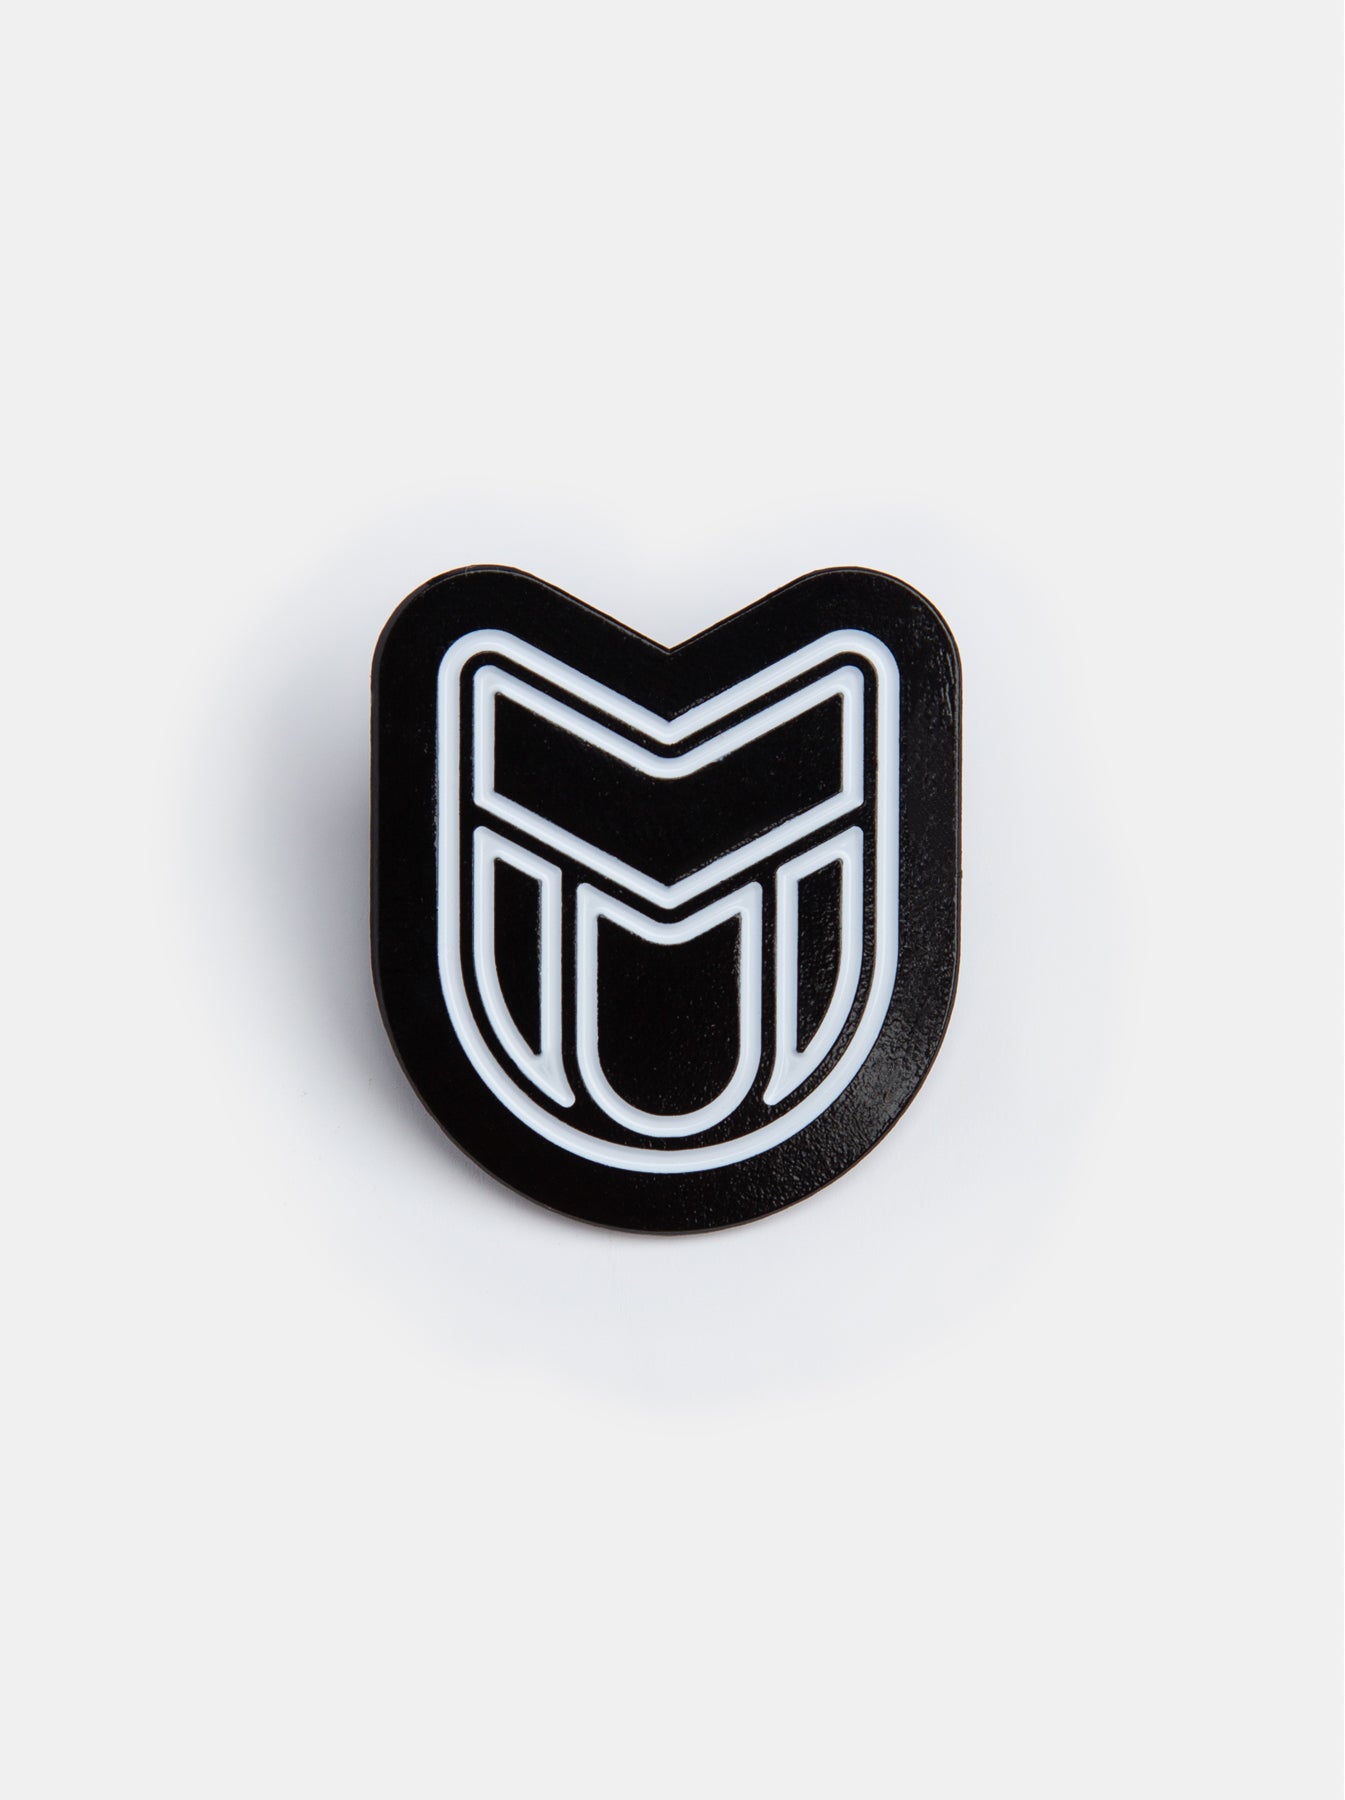 Mutt Shield Enamel Pin Badge